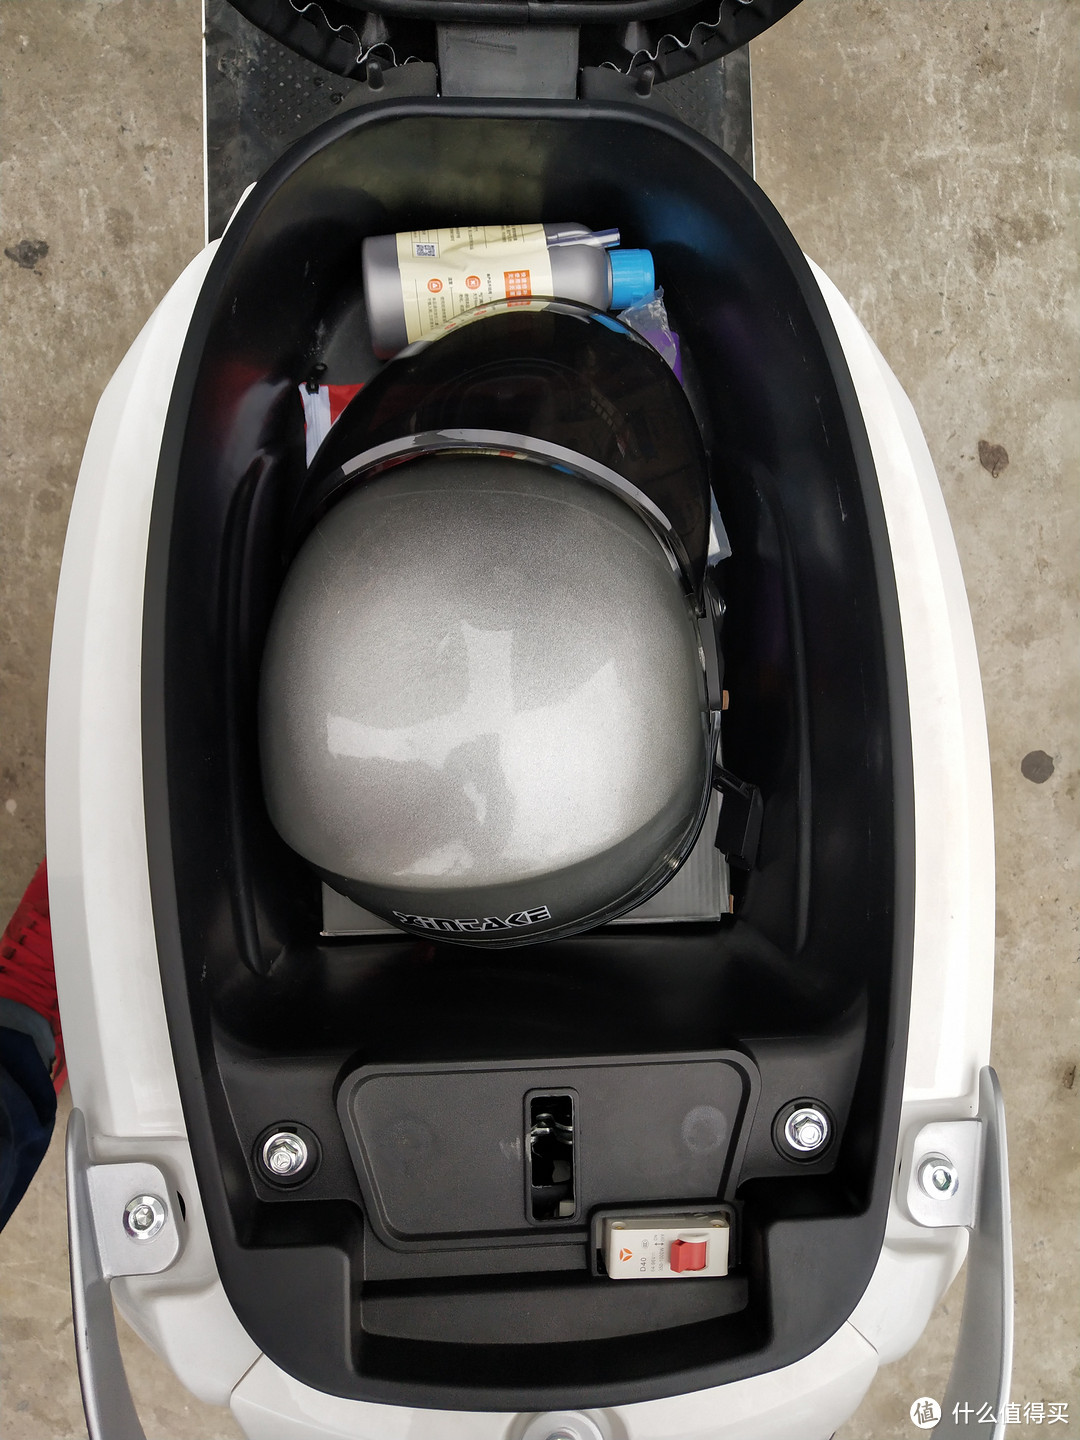 18L的坐桶，里面放电池充电器，锁，补胎液，两盒牛奶，还有一个安全帽空间还绰绰有余。